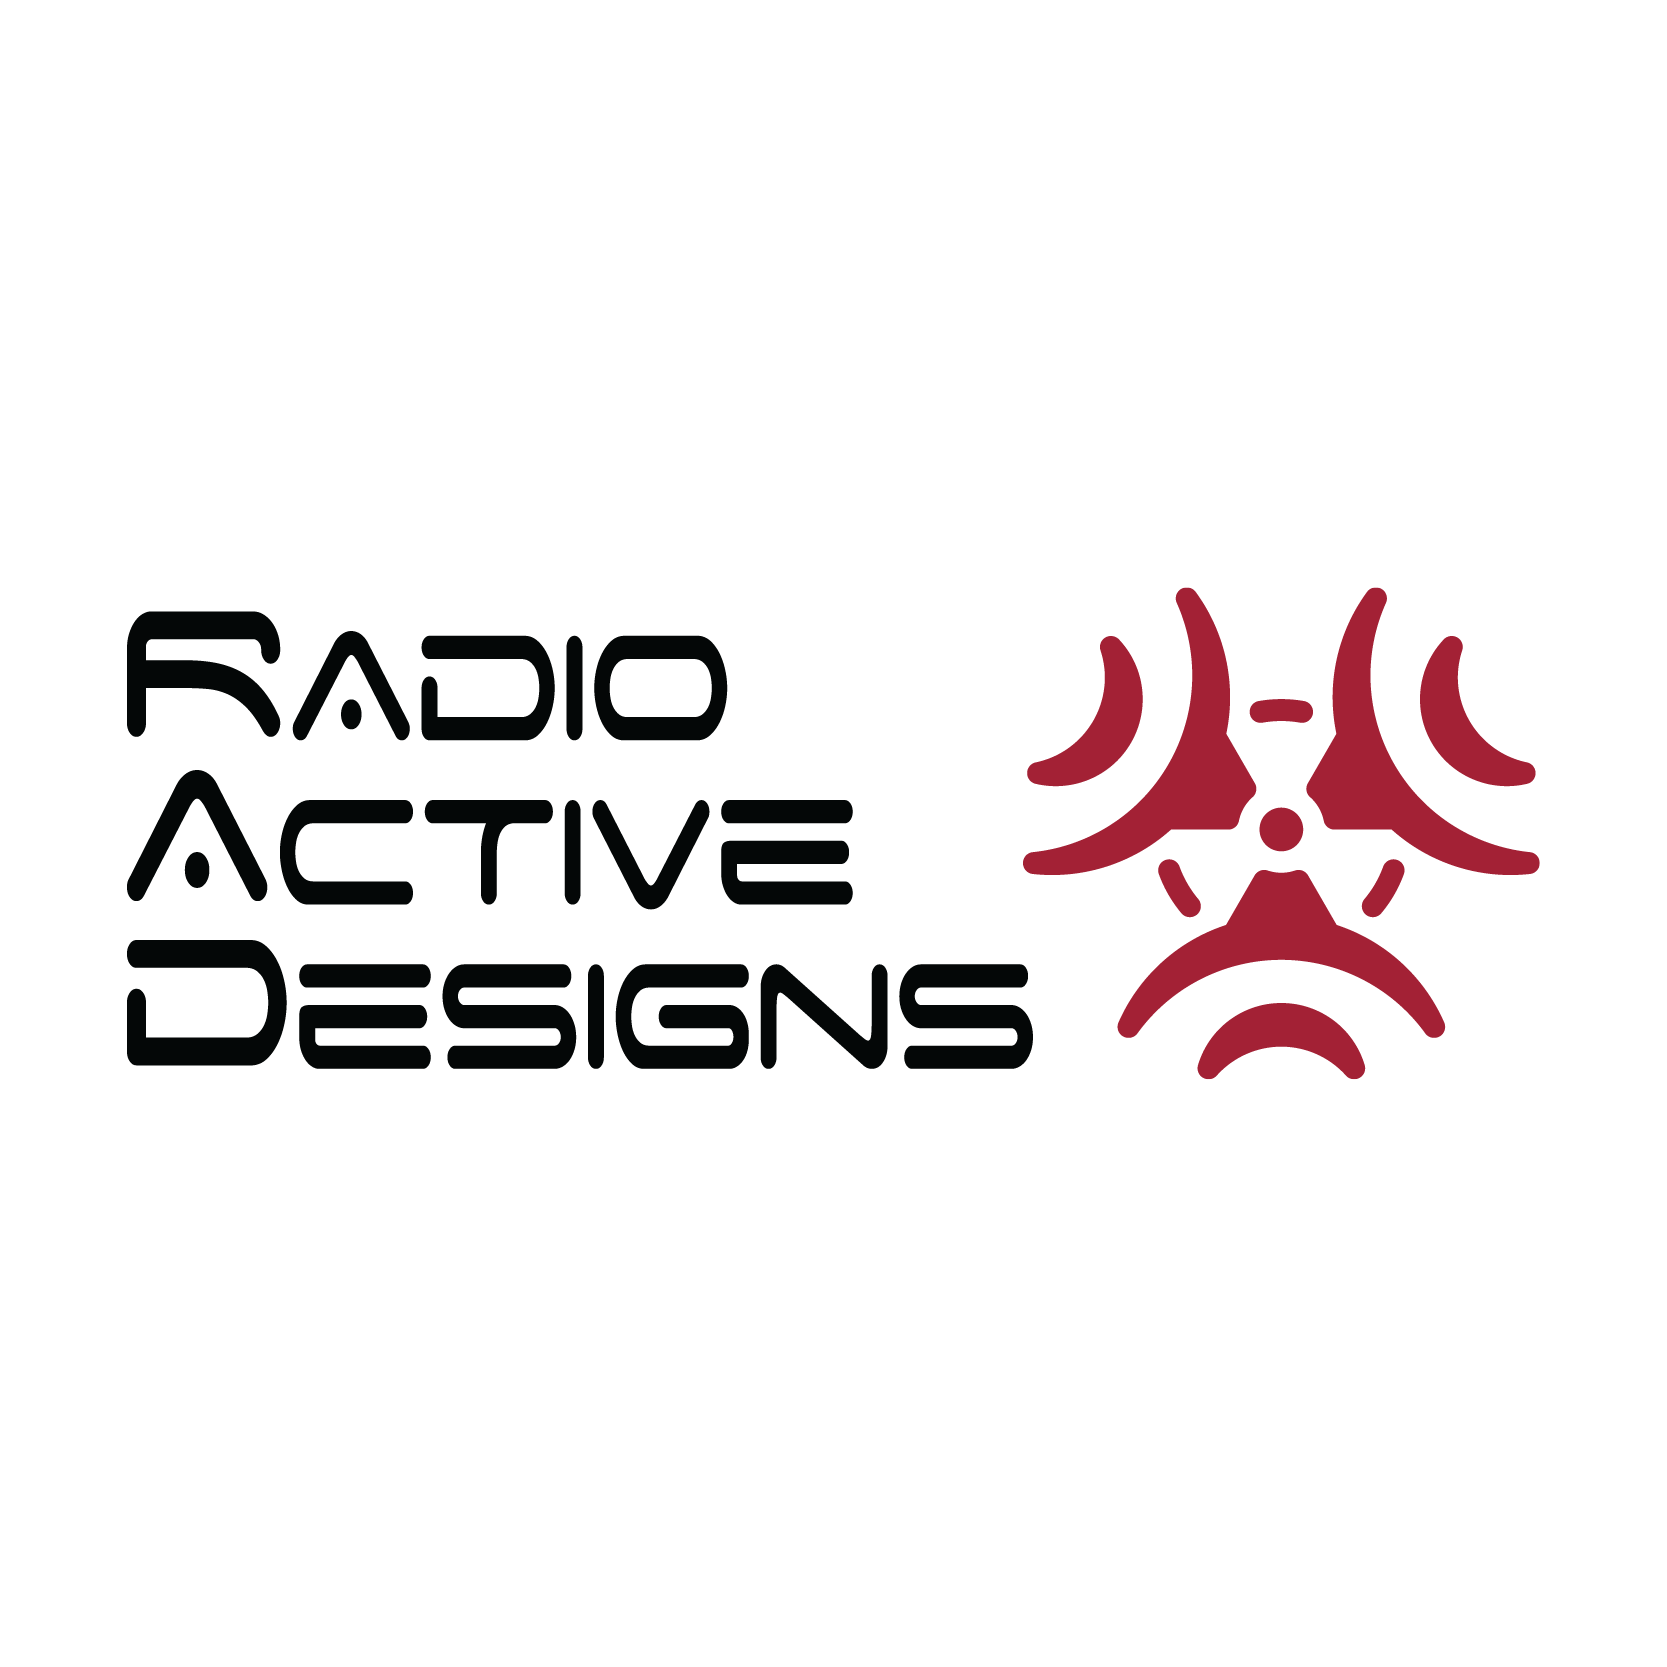 Radio Active Designs Logo